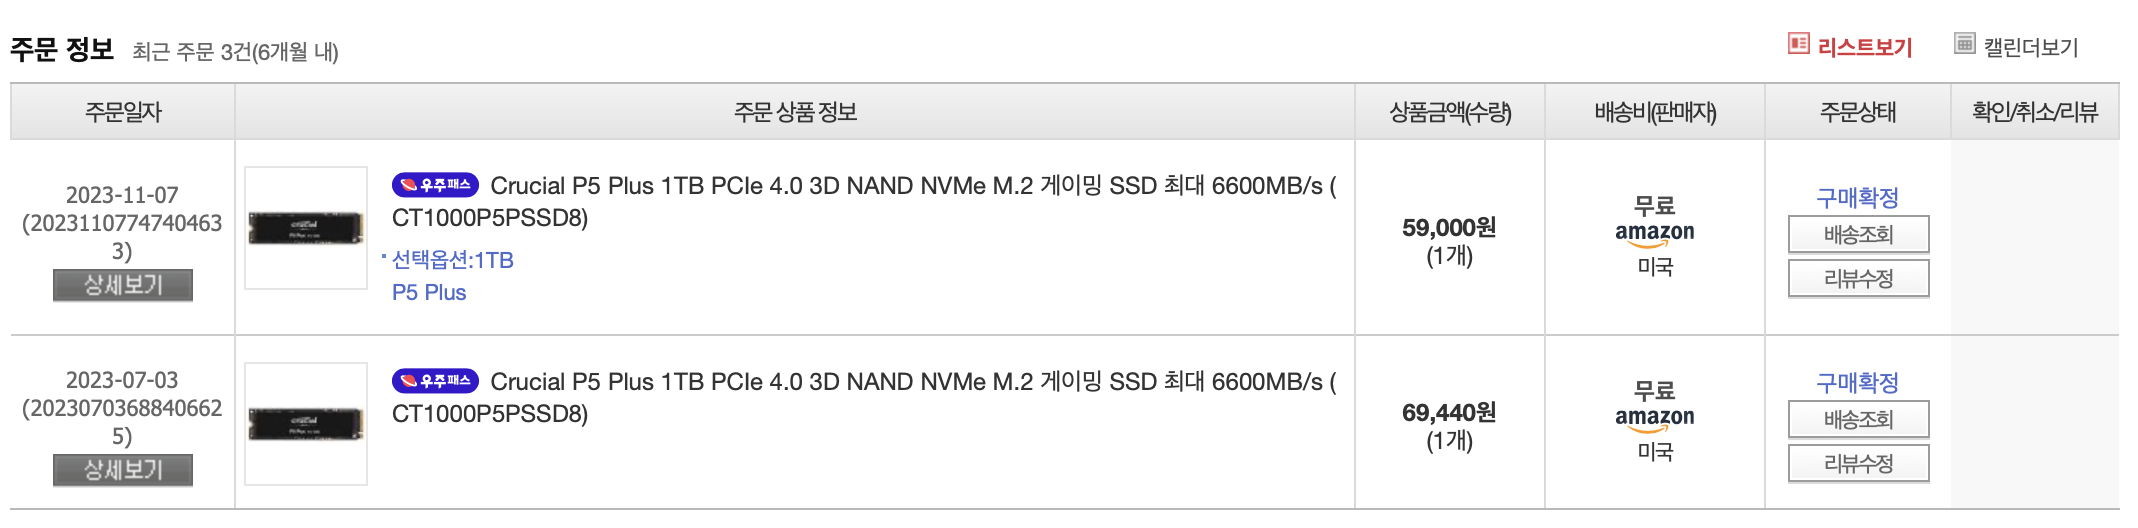 11마존 SSD 특가 구매